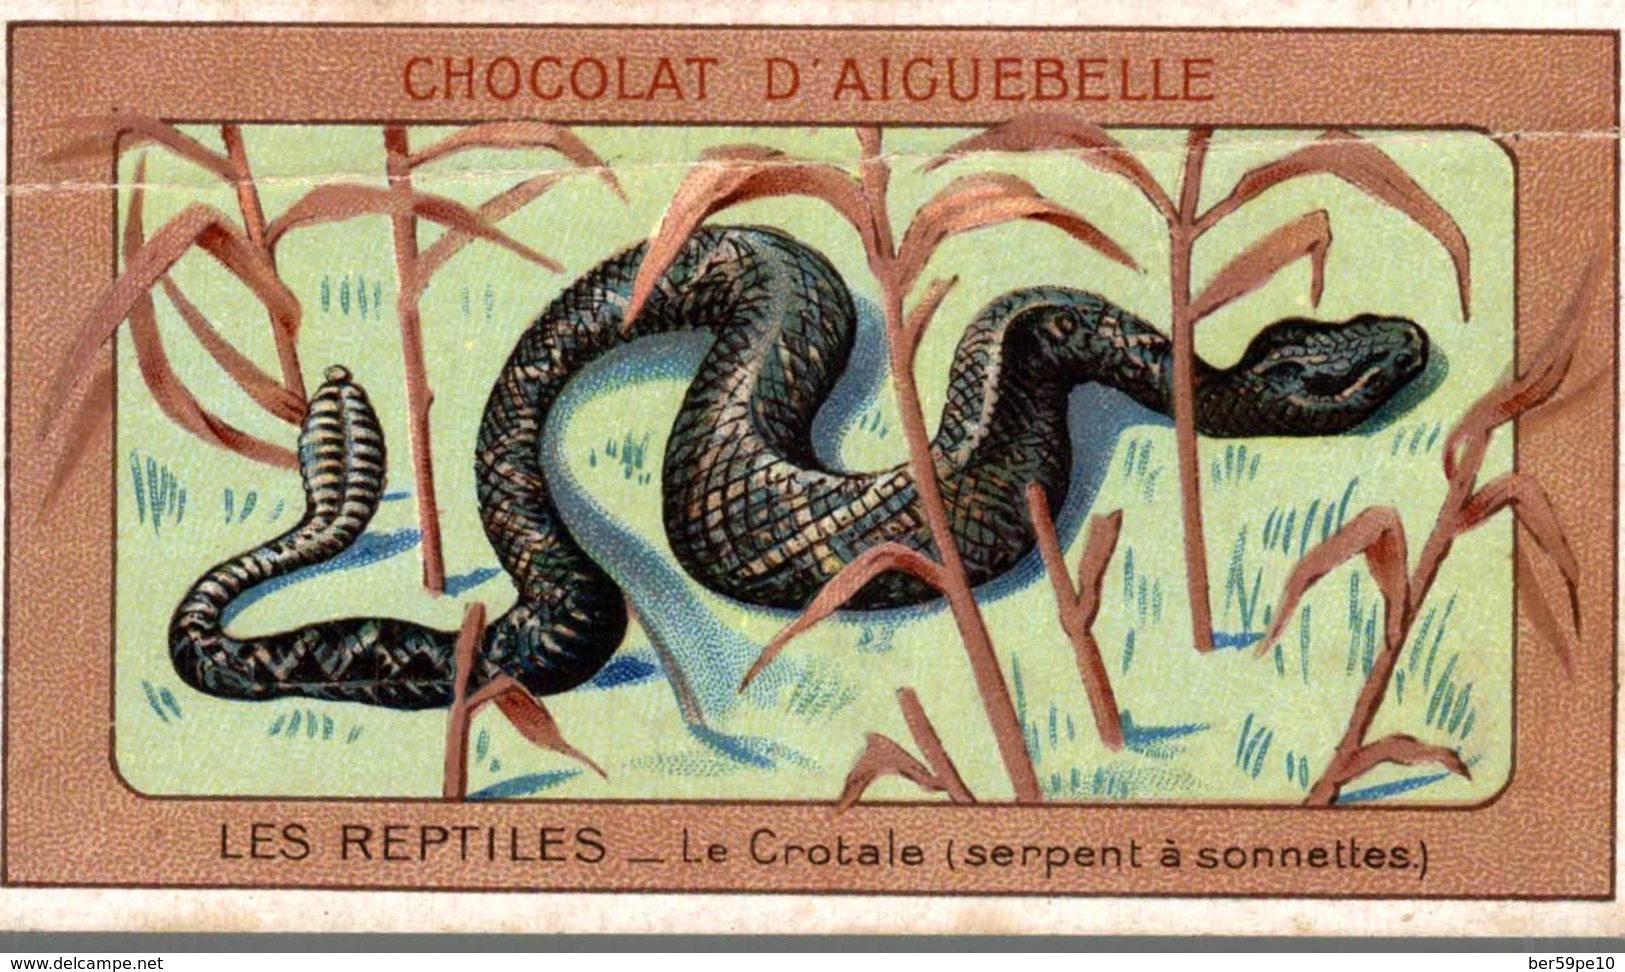 CHROMO CHOCOLAT D'AIGUEBELLE  LES REPTILES  LE CROTALE  SERPENT A SONNETTES - Aiguebelle